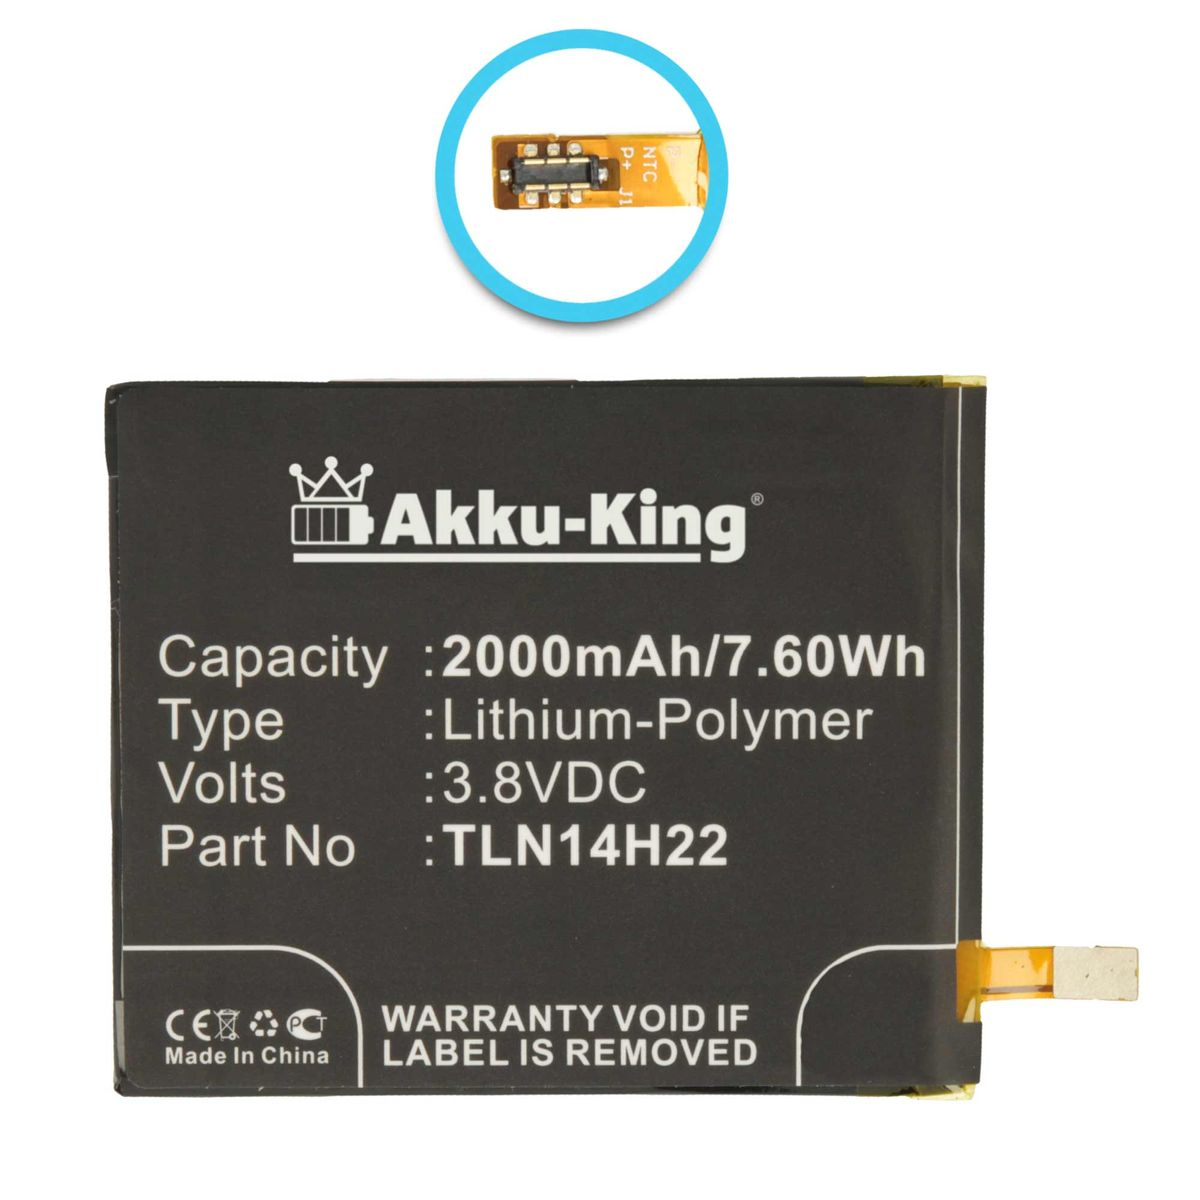 AKKU-KING Akku mit Volt, Handy-Akku, Li-Polymer TLE14E20 2000mAh Wiko kompatibel 3.8